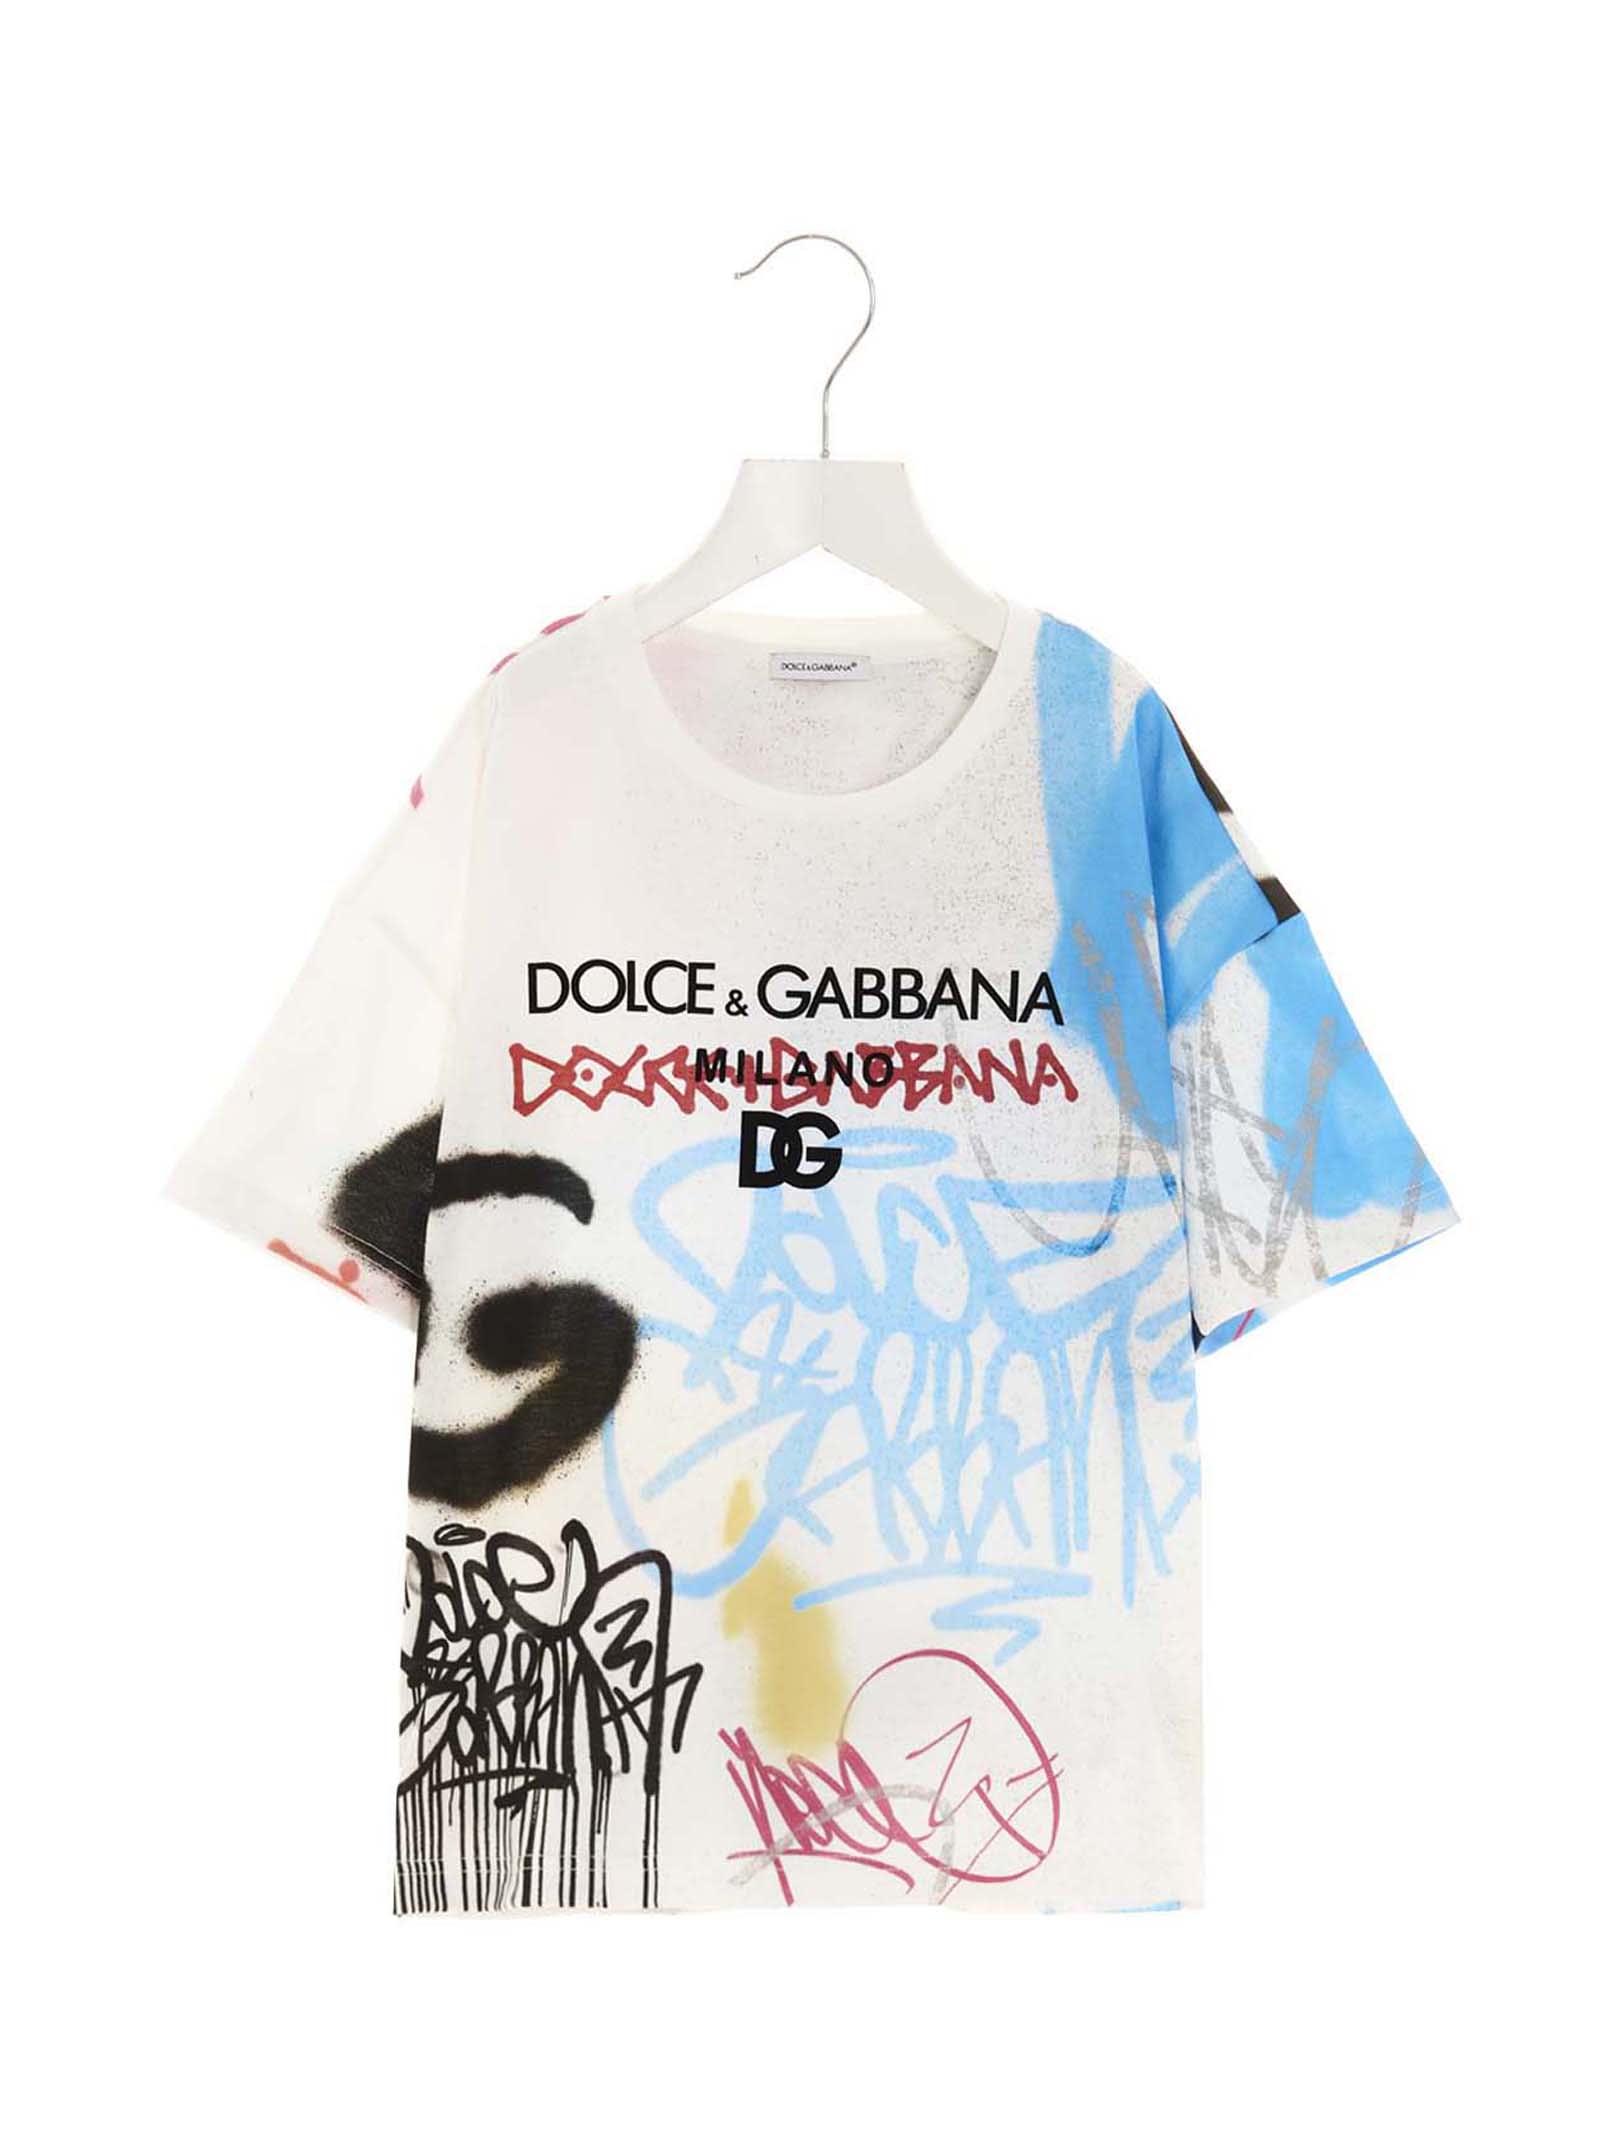 Dolce & Gabbana T-shirt logo Graffiti